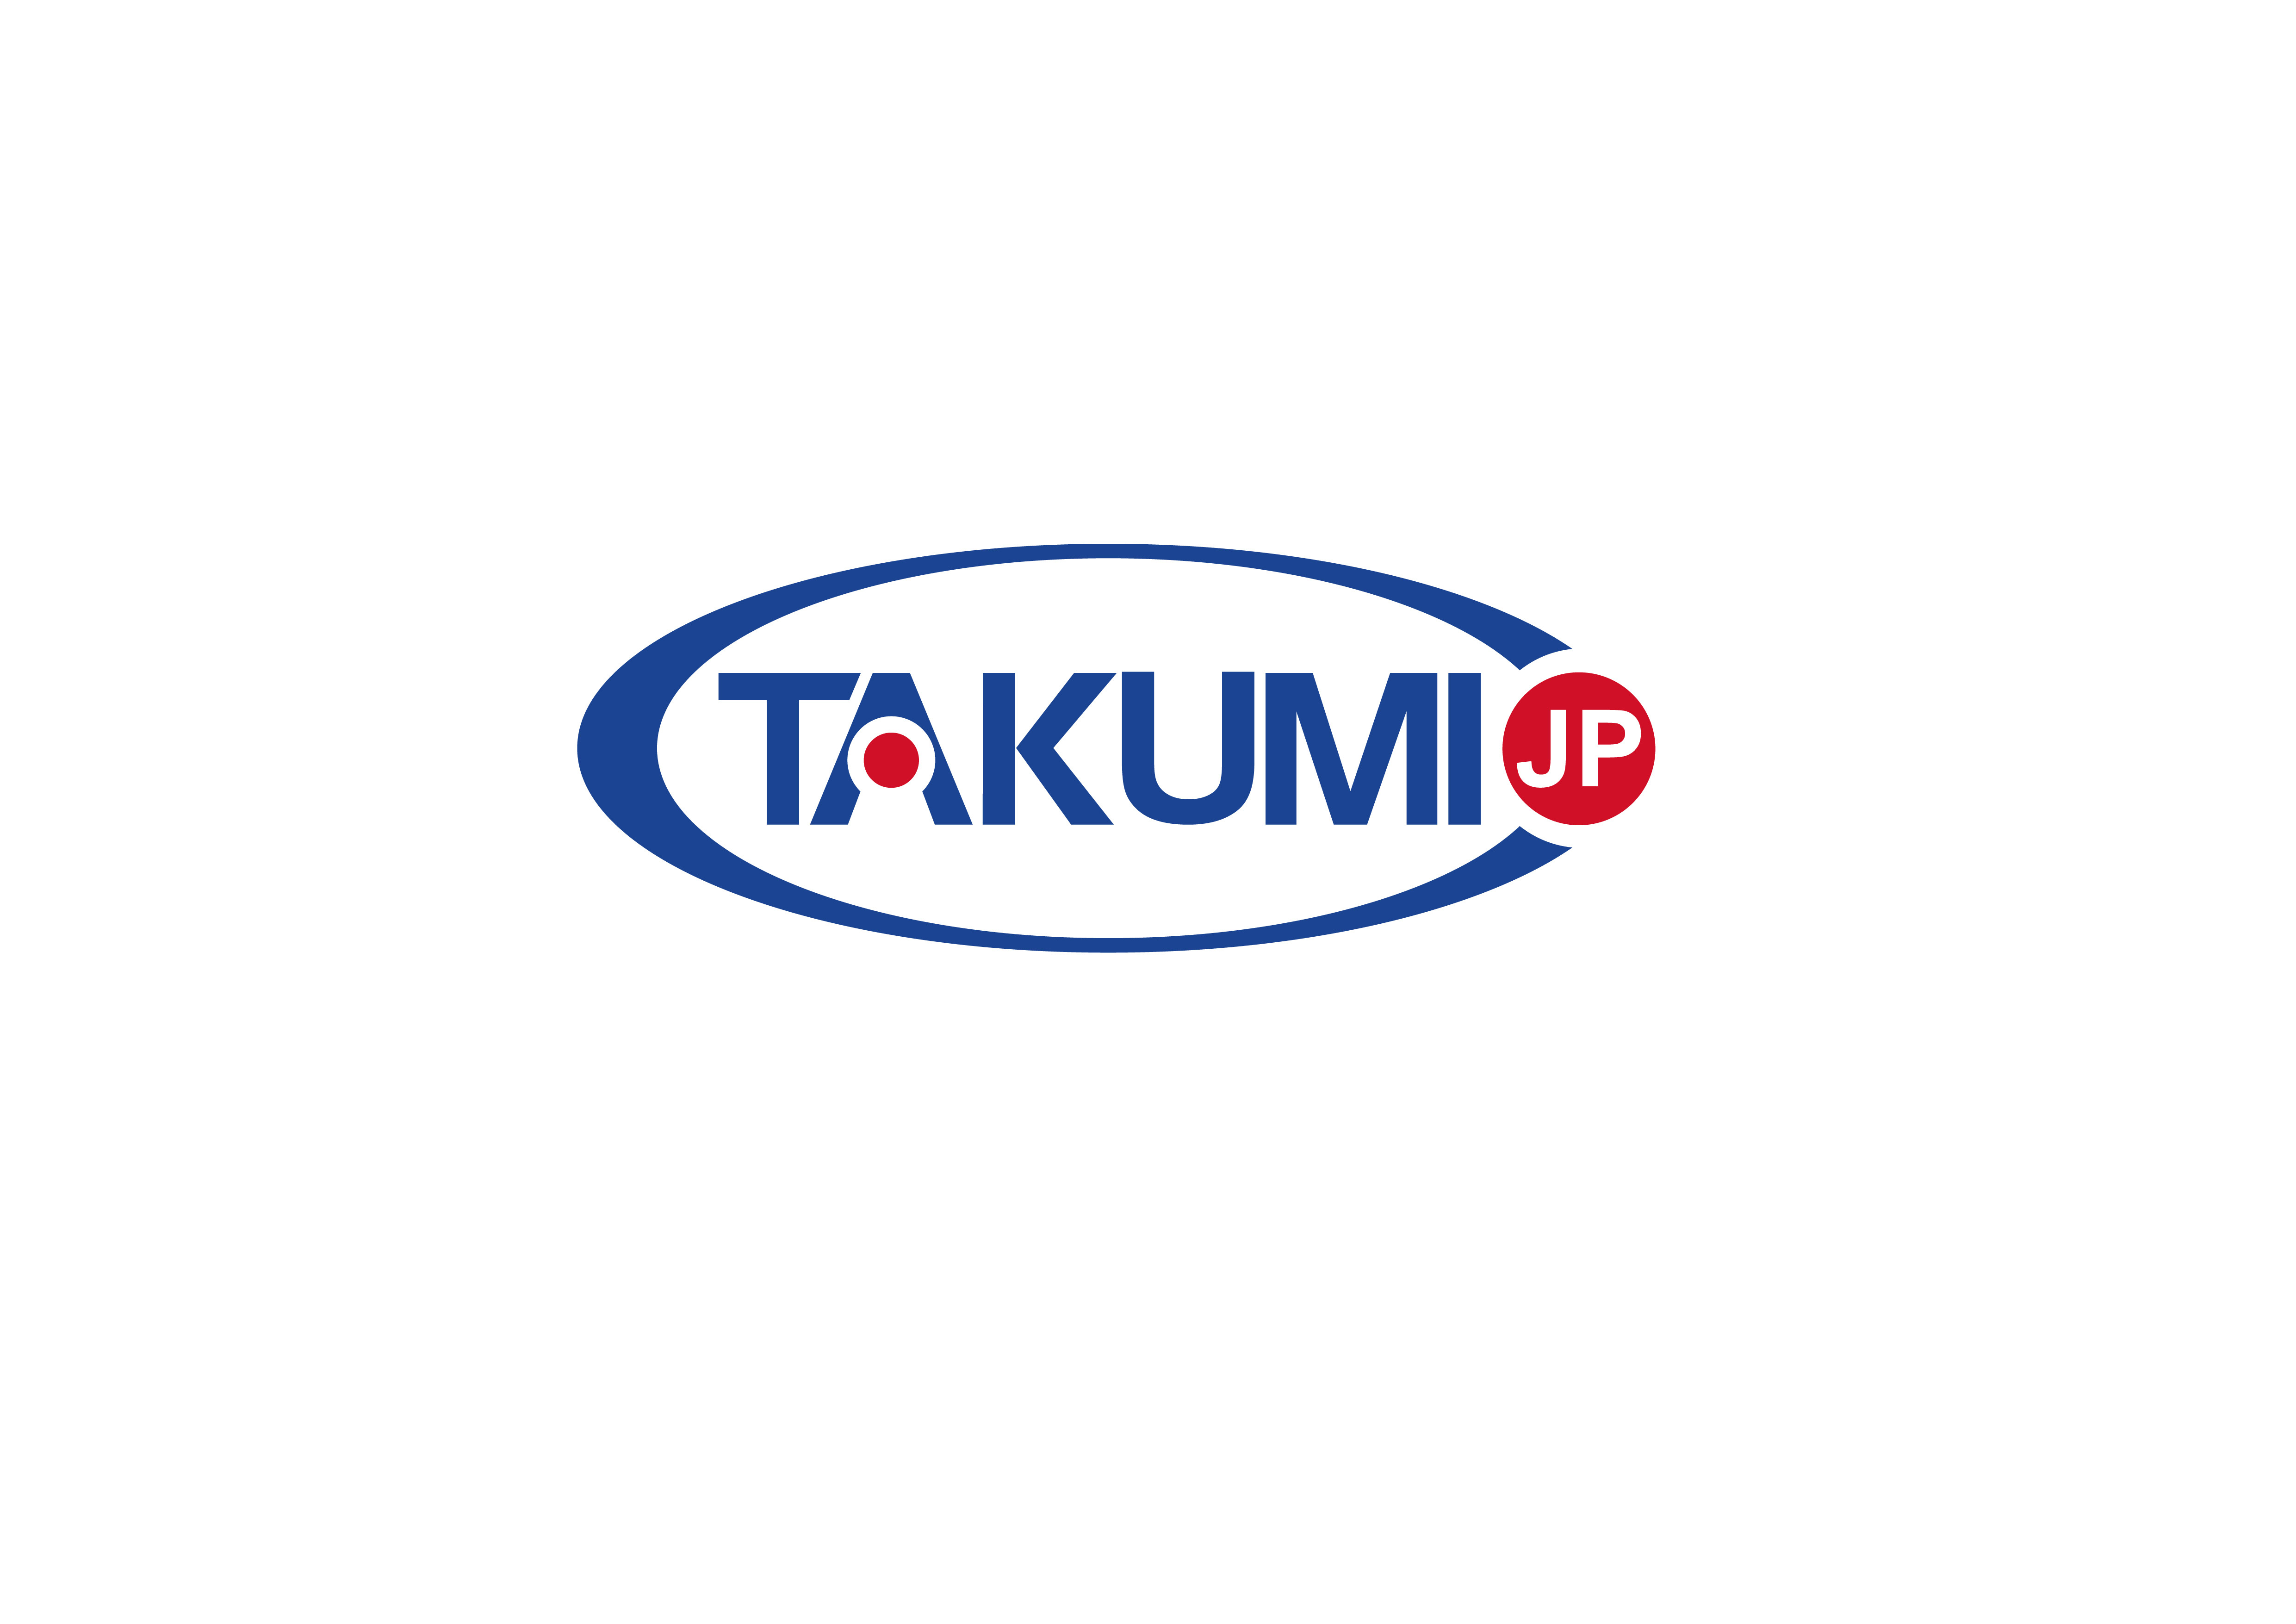 ultimo caso aziendale circa Takumi ora sta cercando un distributore esclusivo globale.